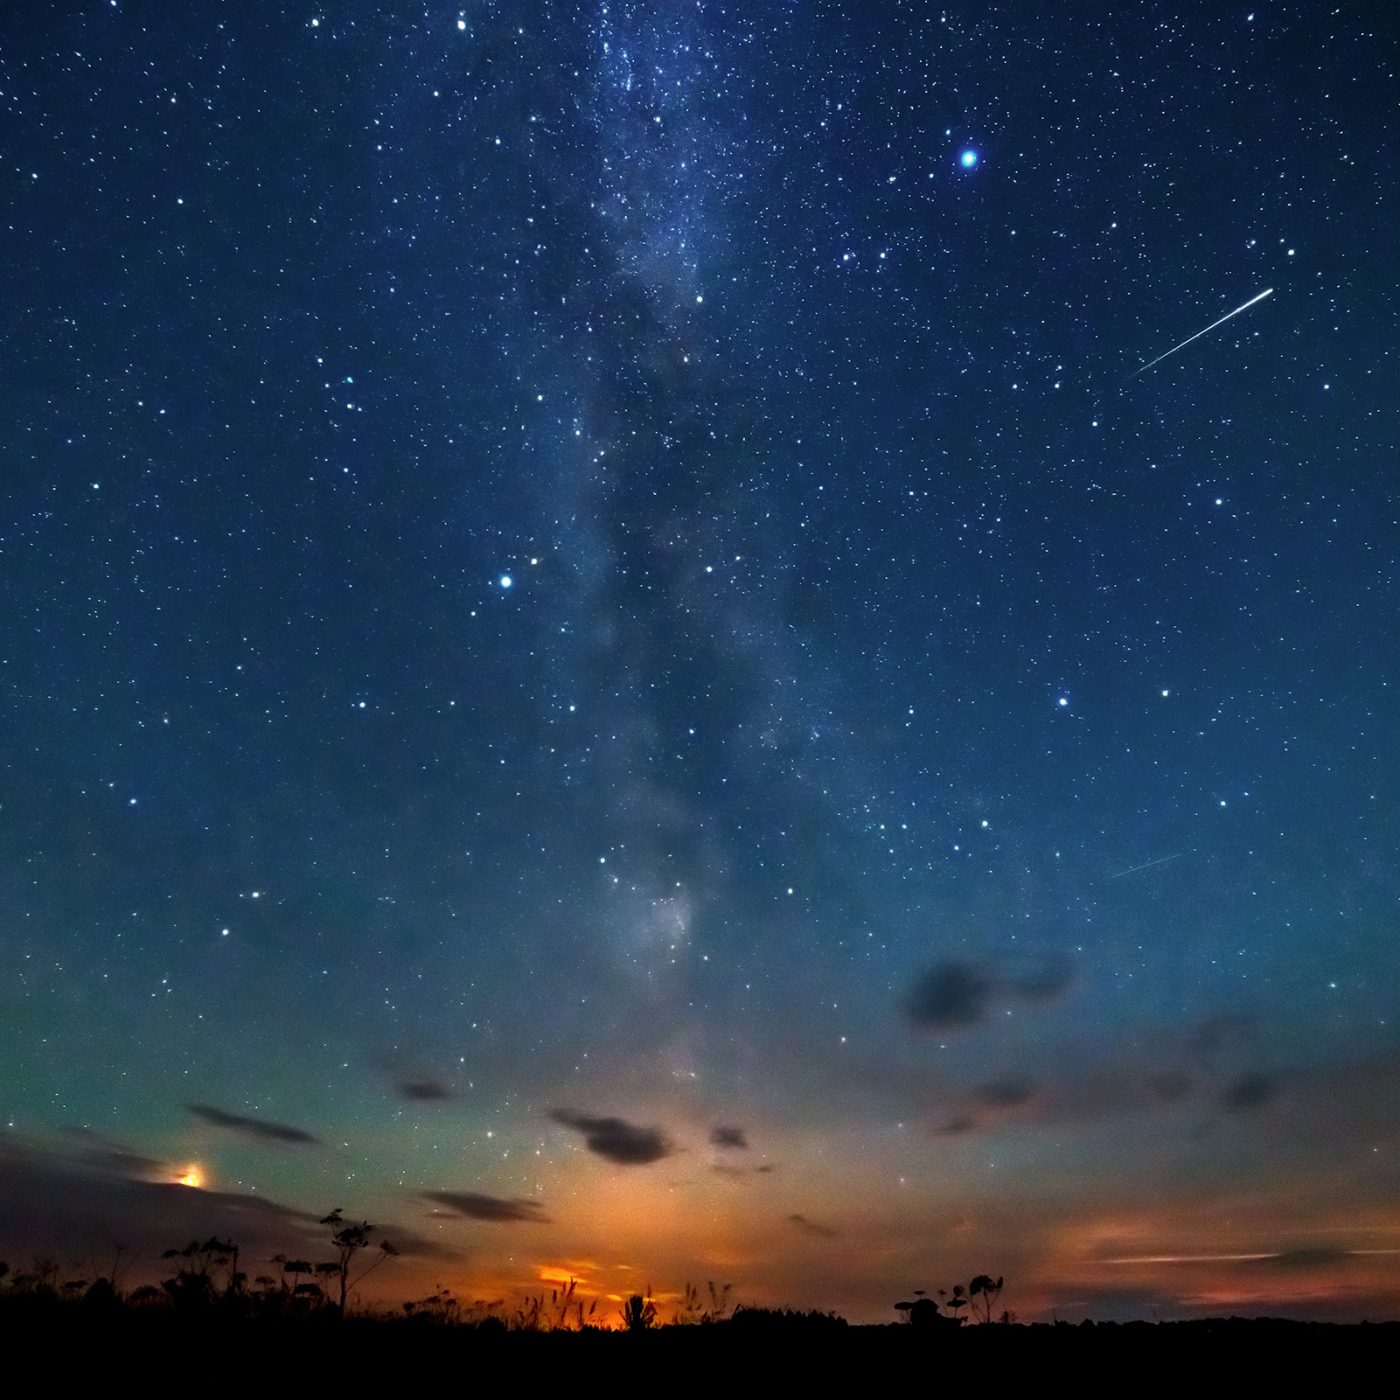 Billions of Celestial Objects Revealed in Gargantuan Survey of the Milky Way